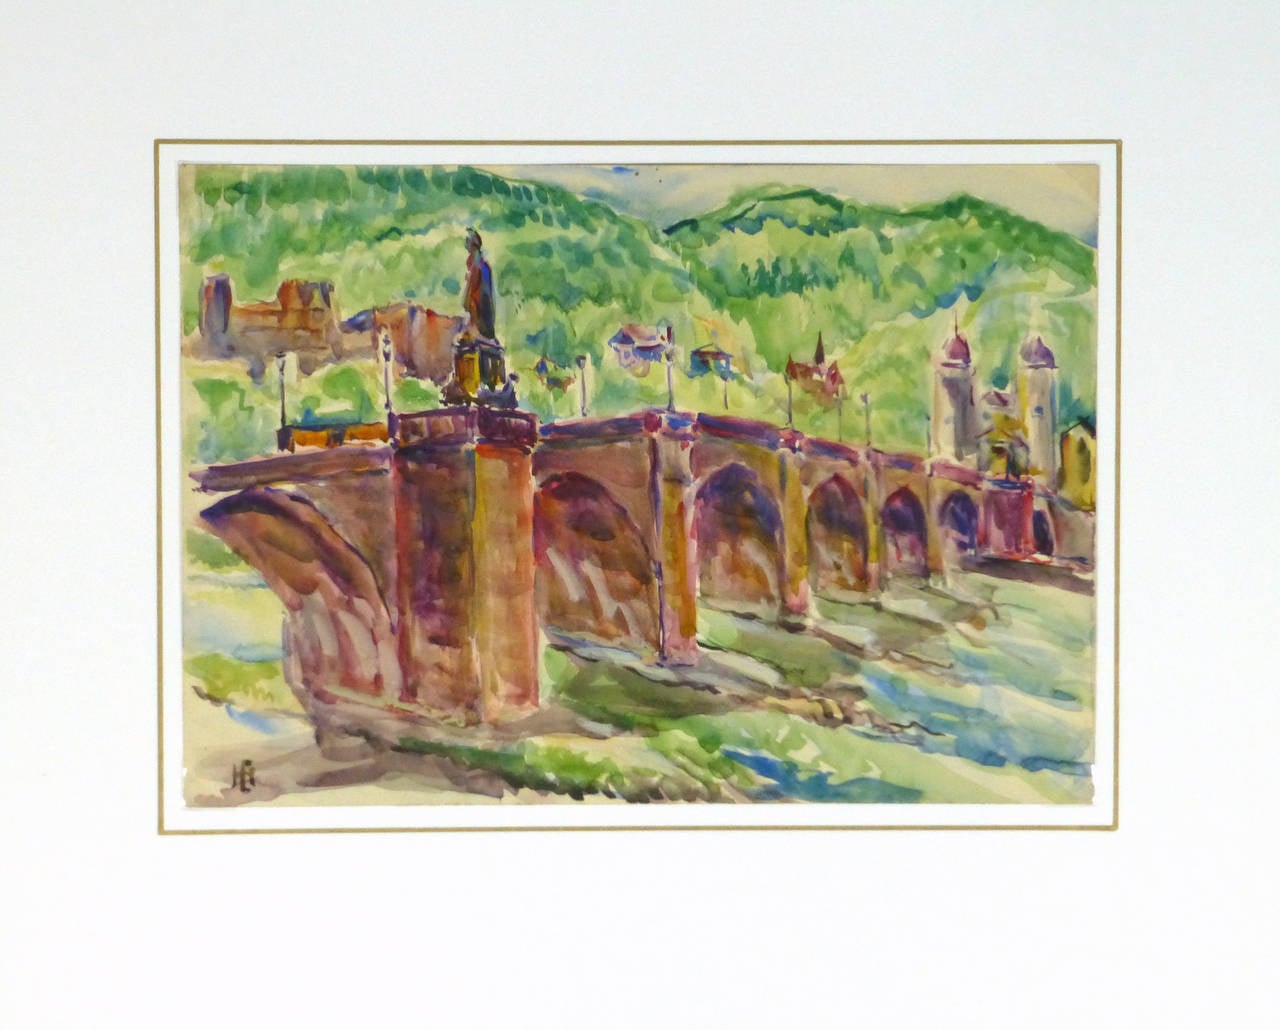 Helles Aquarell der Karl-Theodor-Brücke in Heidelberg, Deutschland, 1950. Signiert unten links, Künstler unbekannt.

Einzigartiges Originalkunstwerk auf Papier, das auf einer weißen Matte mit Goldrand präsentiert wird. Die Matte passt in einen